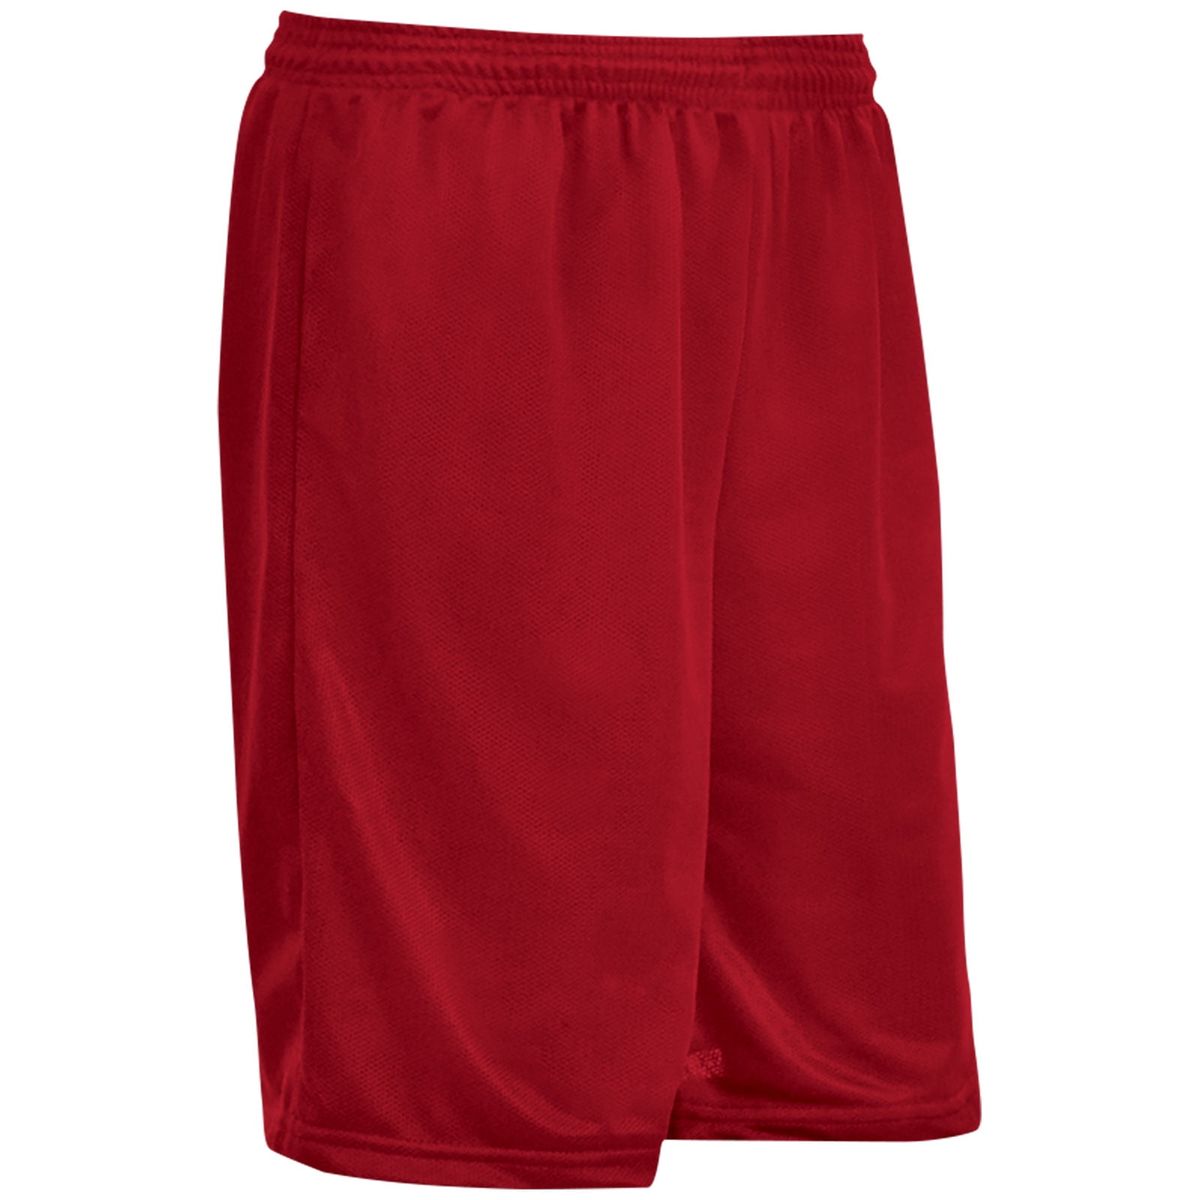 [送料無料] ボス アスレチック ショーツ 股下7インチ 大人用 X-Sサイズ スカーレット [楽天海外通販] | Boss Athletic Shorts, 7" Inseam, Adult X-Small, Scarlet